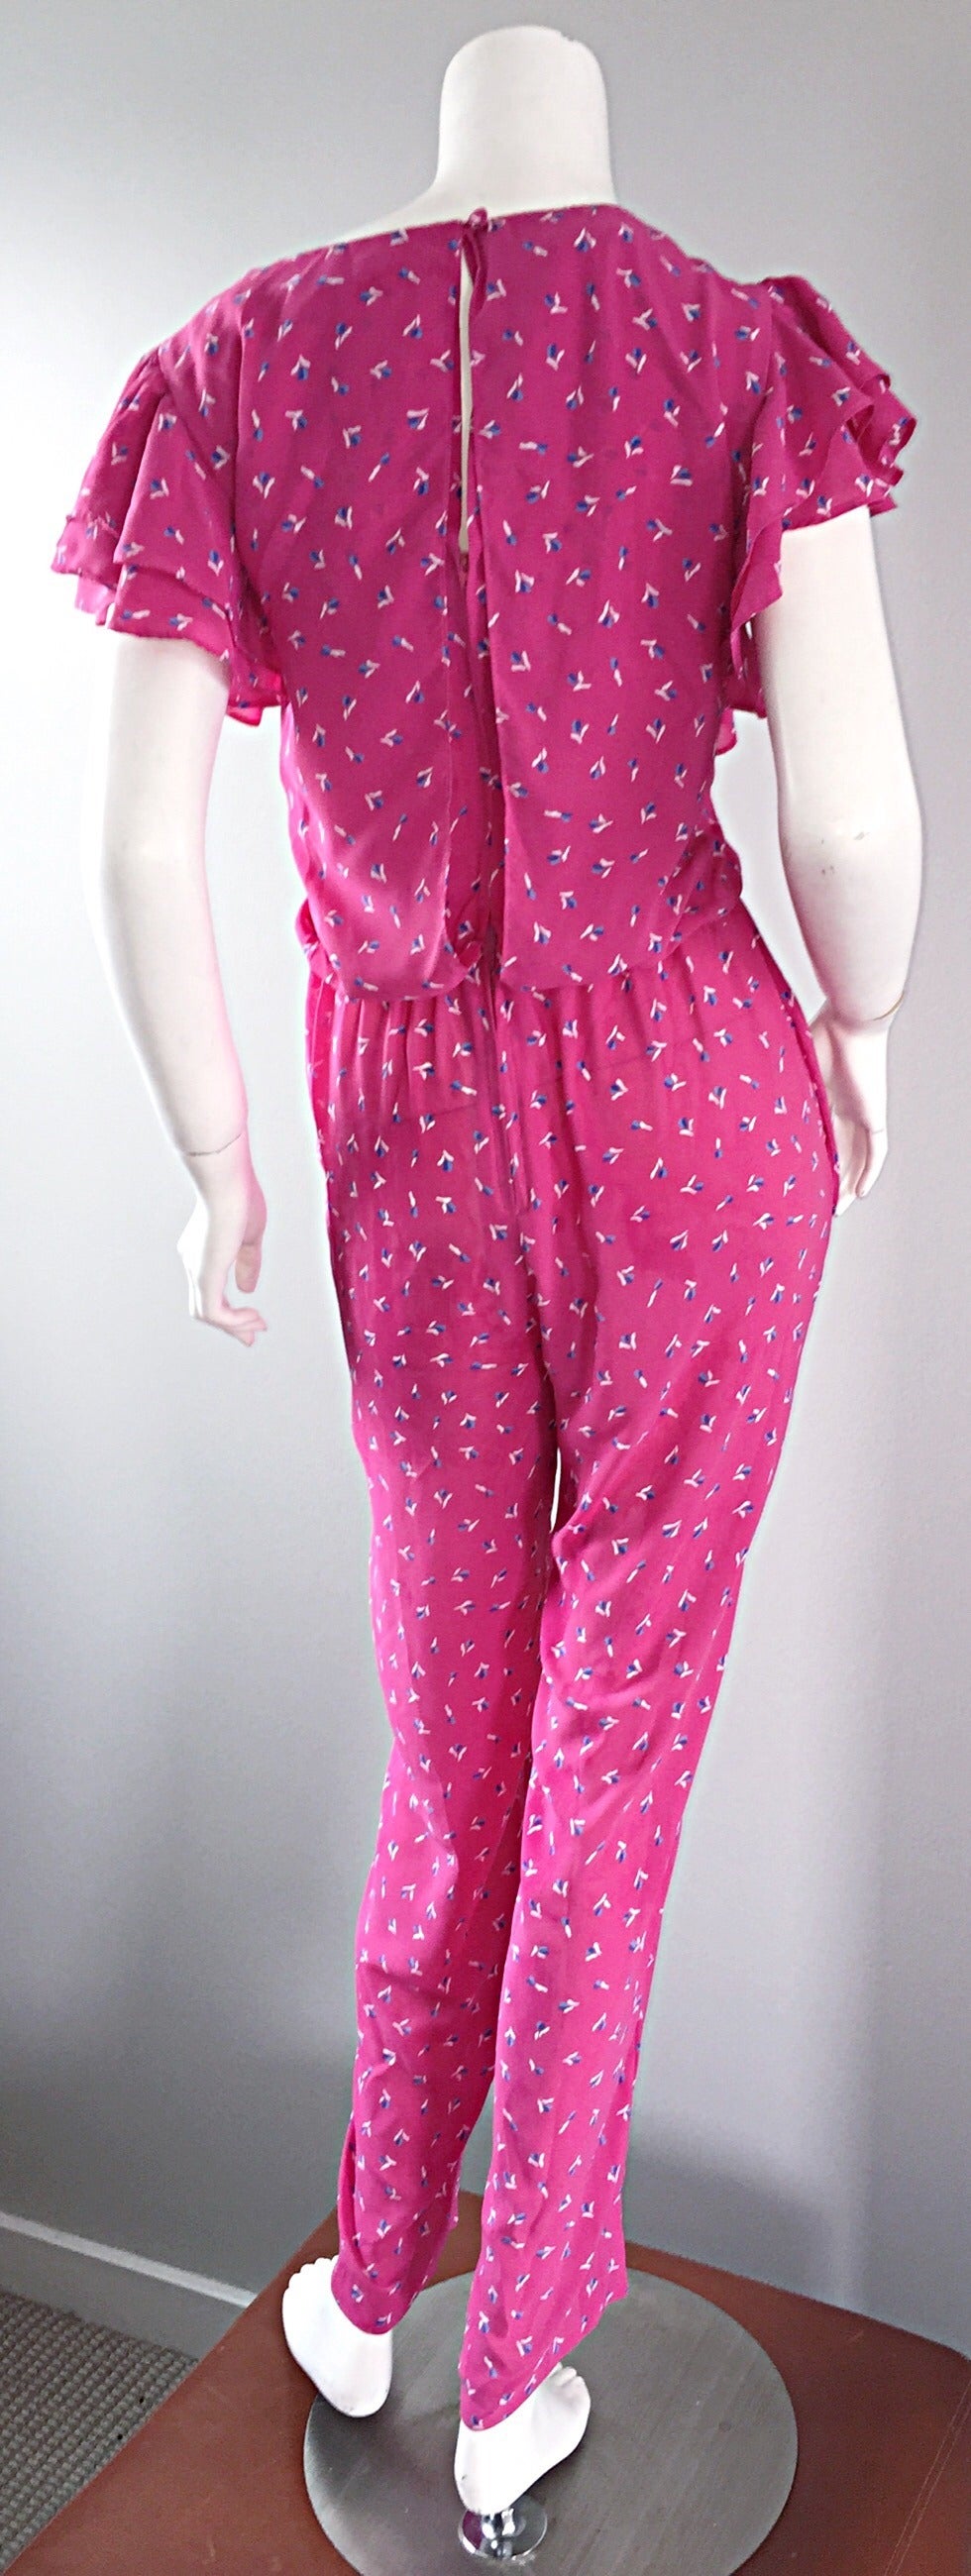 Incredible Vintage Pink Boho Jumpsuit, w/ Ruffles + Flowers / Roses 1